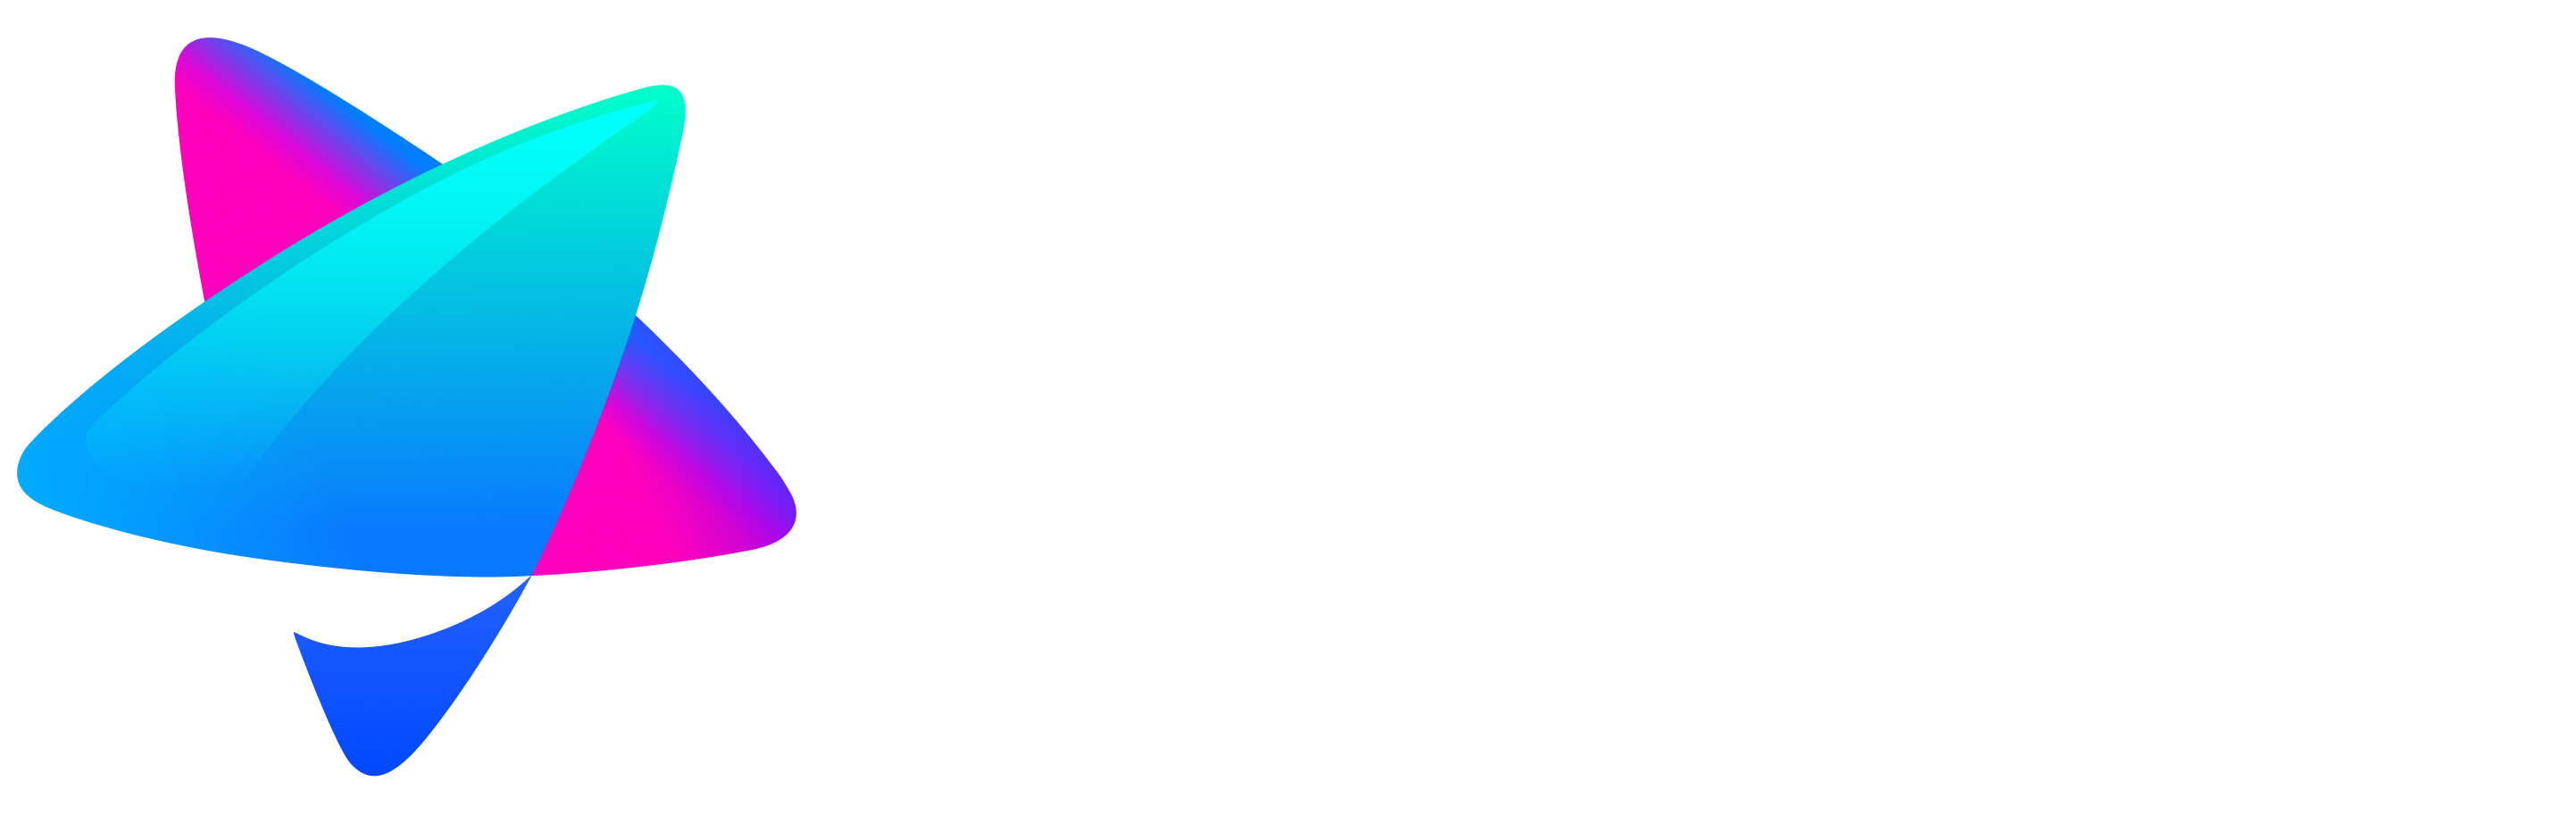 Champion Partners - Company logo